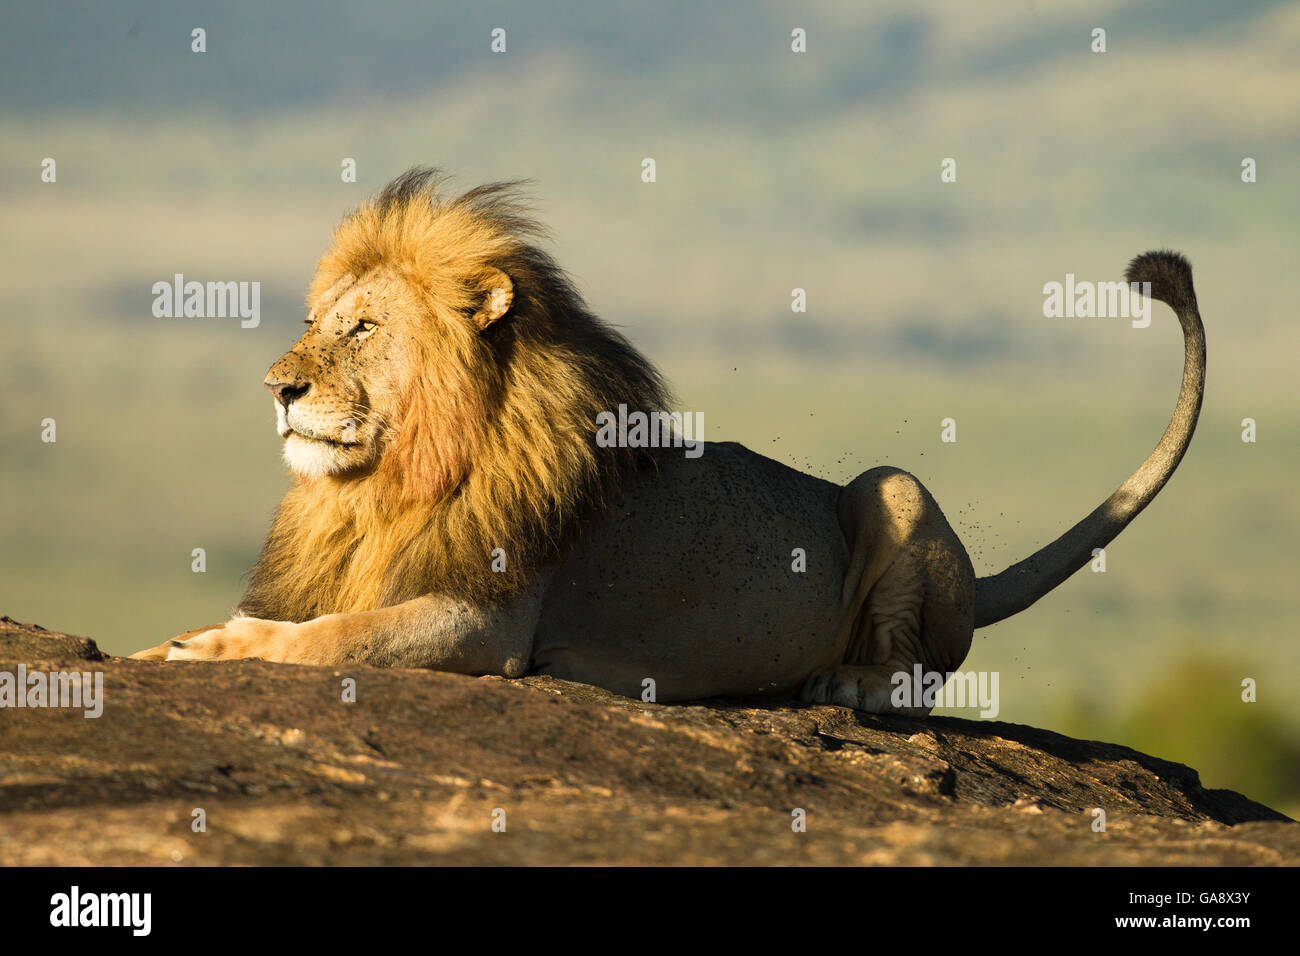 Leone africano (Panthera leo), che poggiano su una roccia, circondata da mosche, Masai Mara Game Reserve, in Kenya. Novembre. Foto Stock